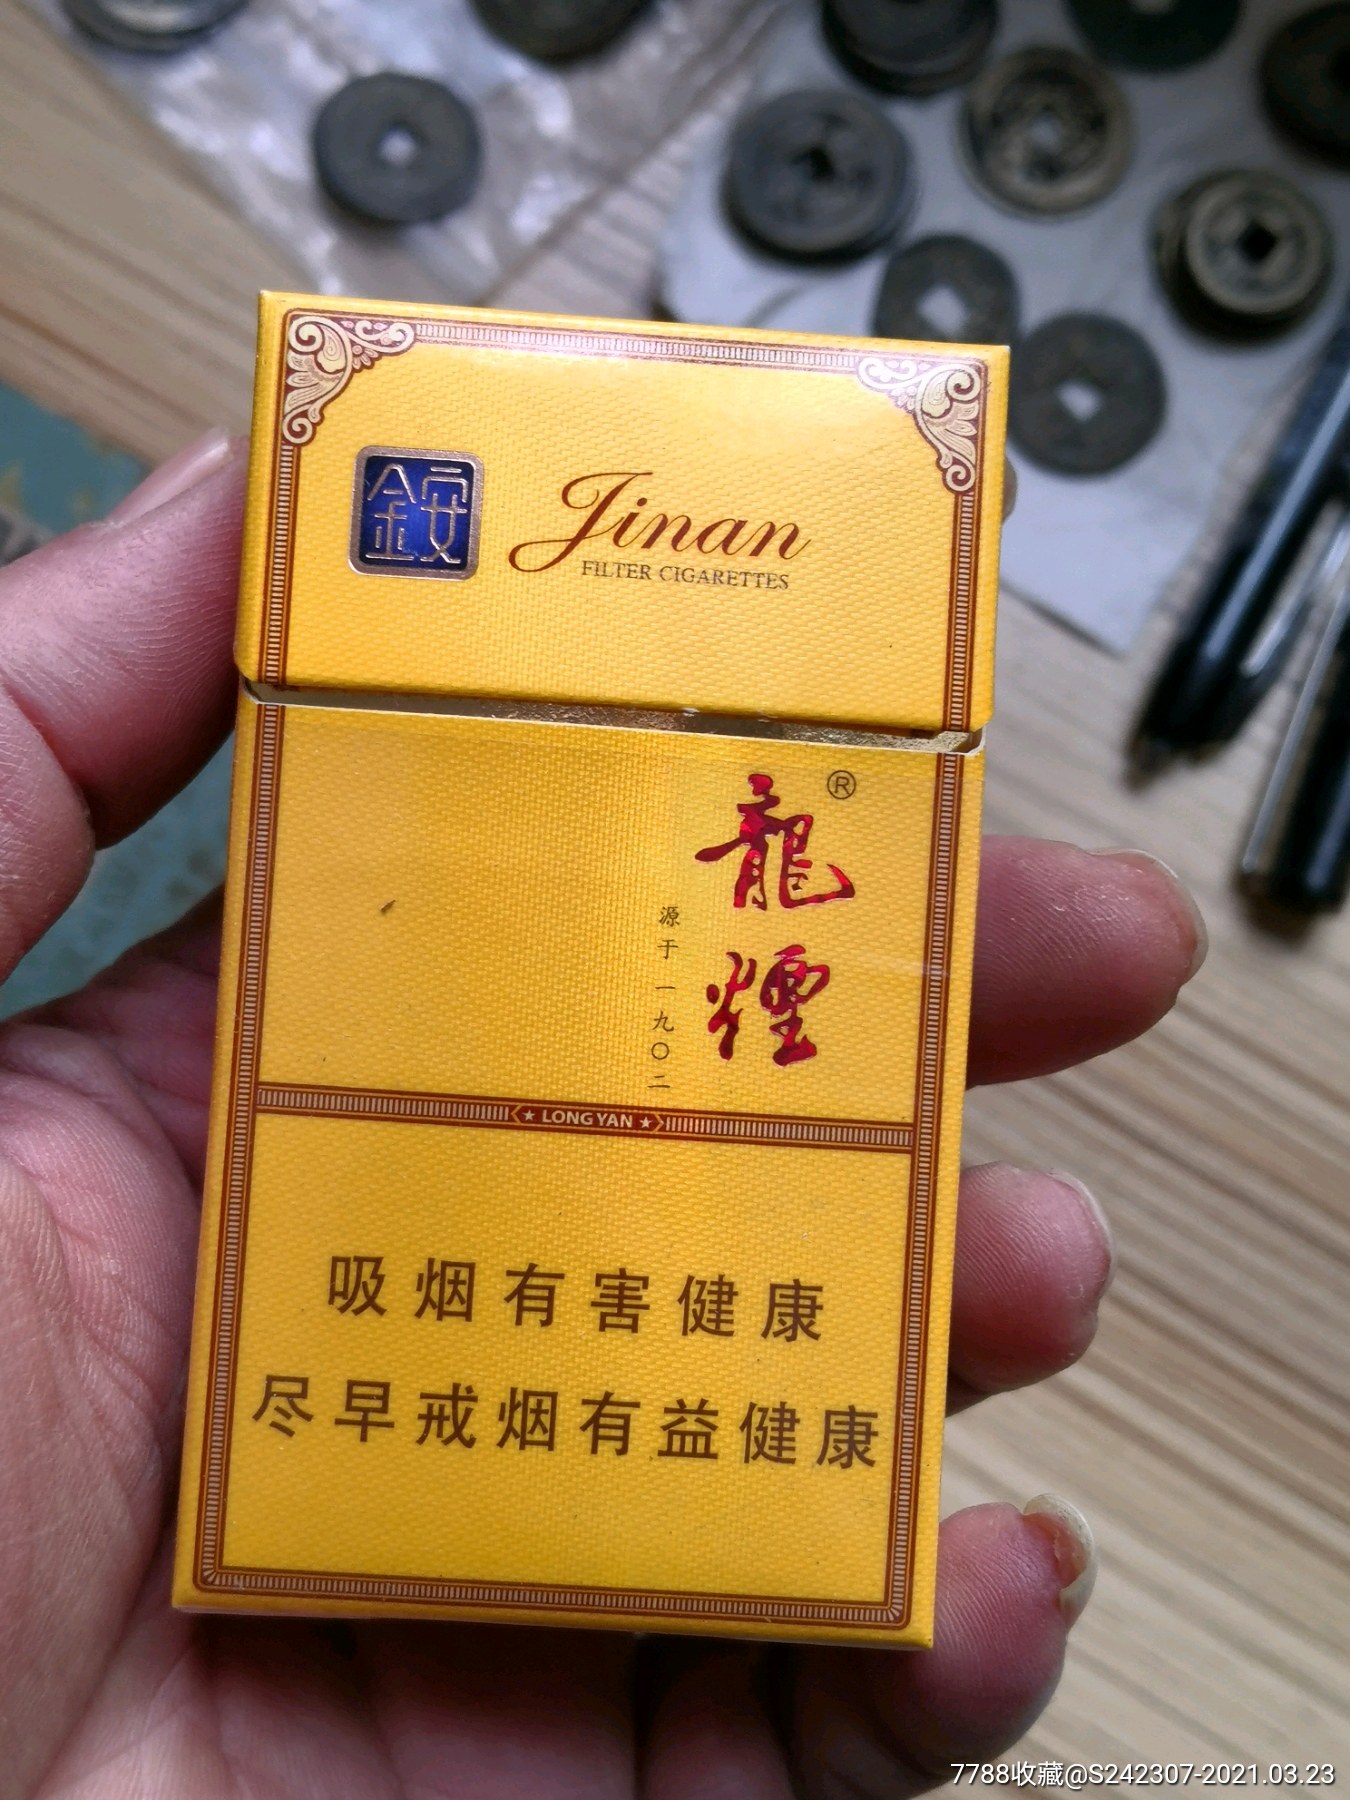 金安龙烟,黑龙江烟草(近全新品)-价格:25元-au-烟标